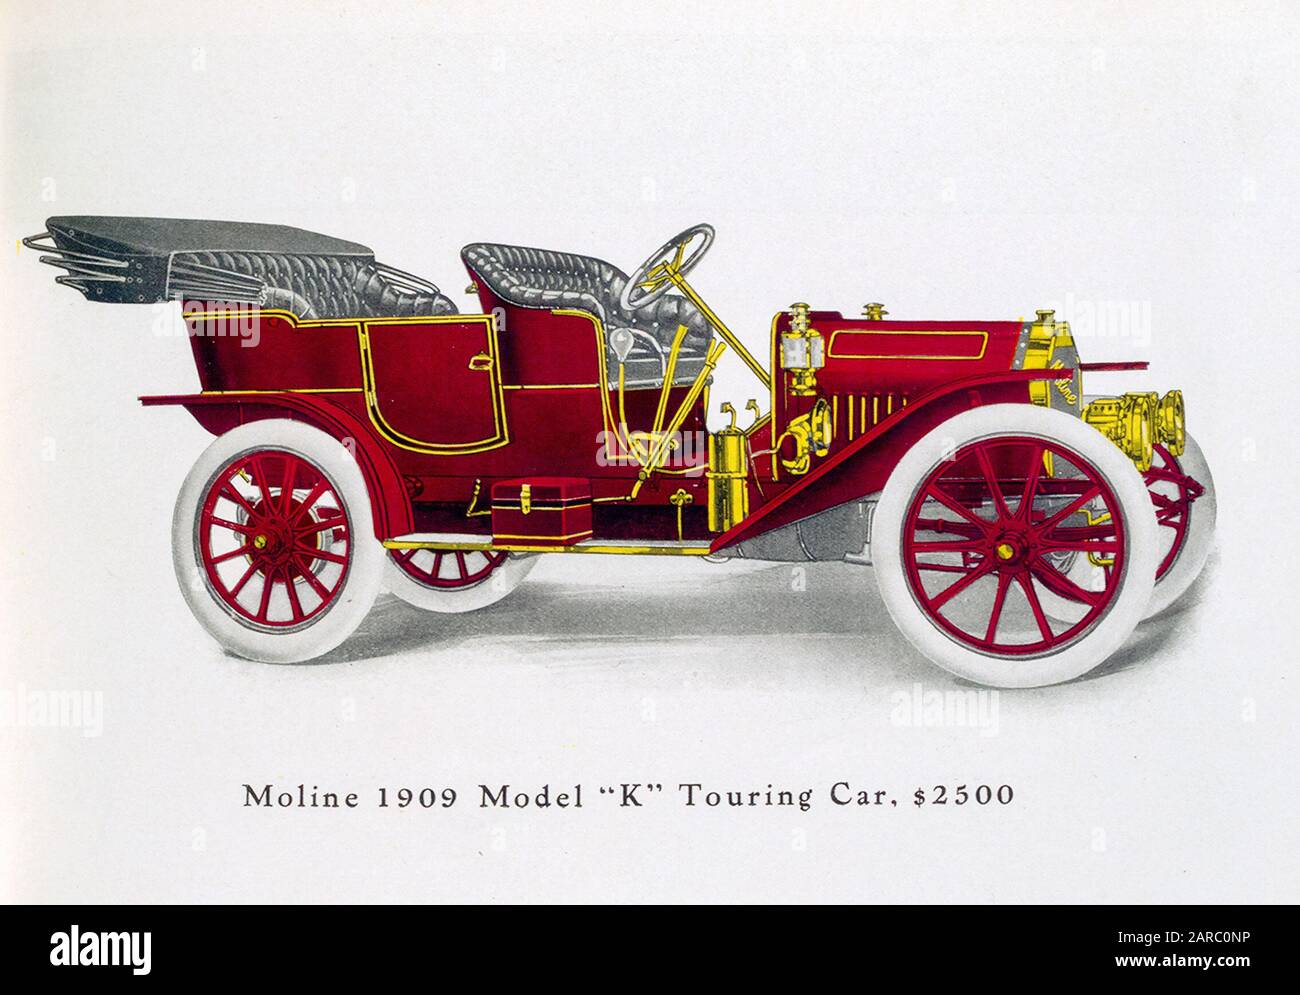 Vintage Car, Moline Model K Touring Car, $2500, illustration 1909 Stock Photo